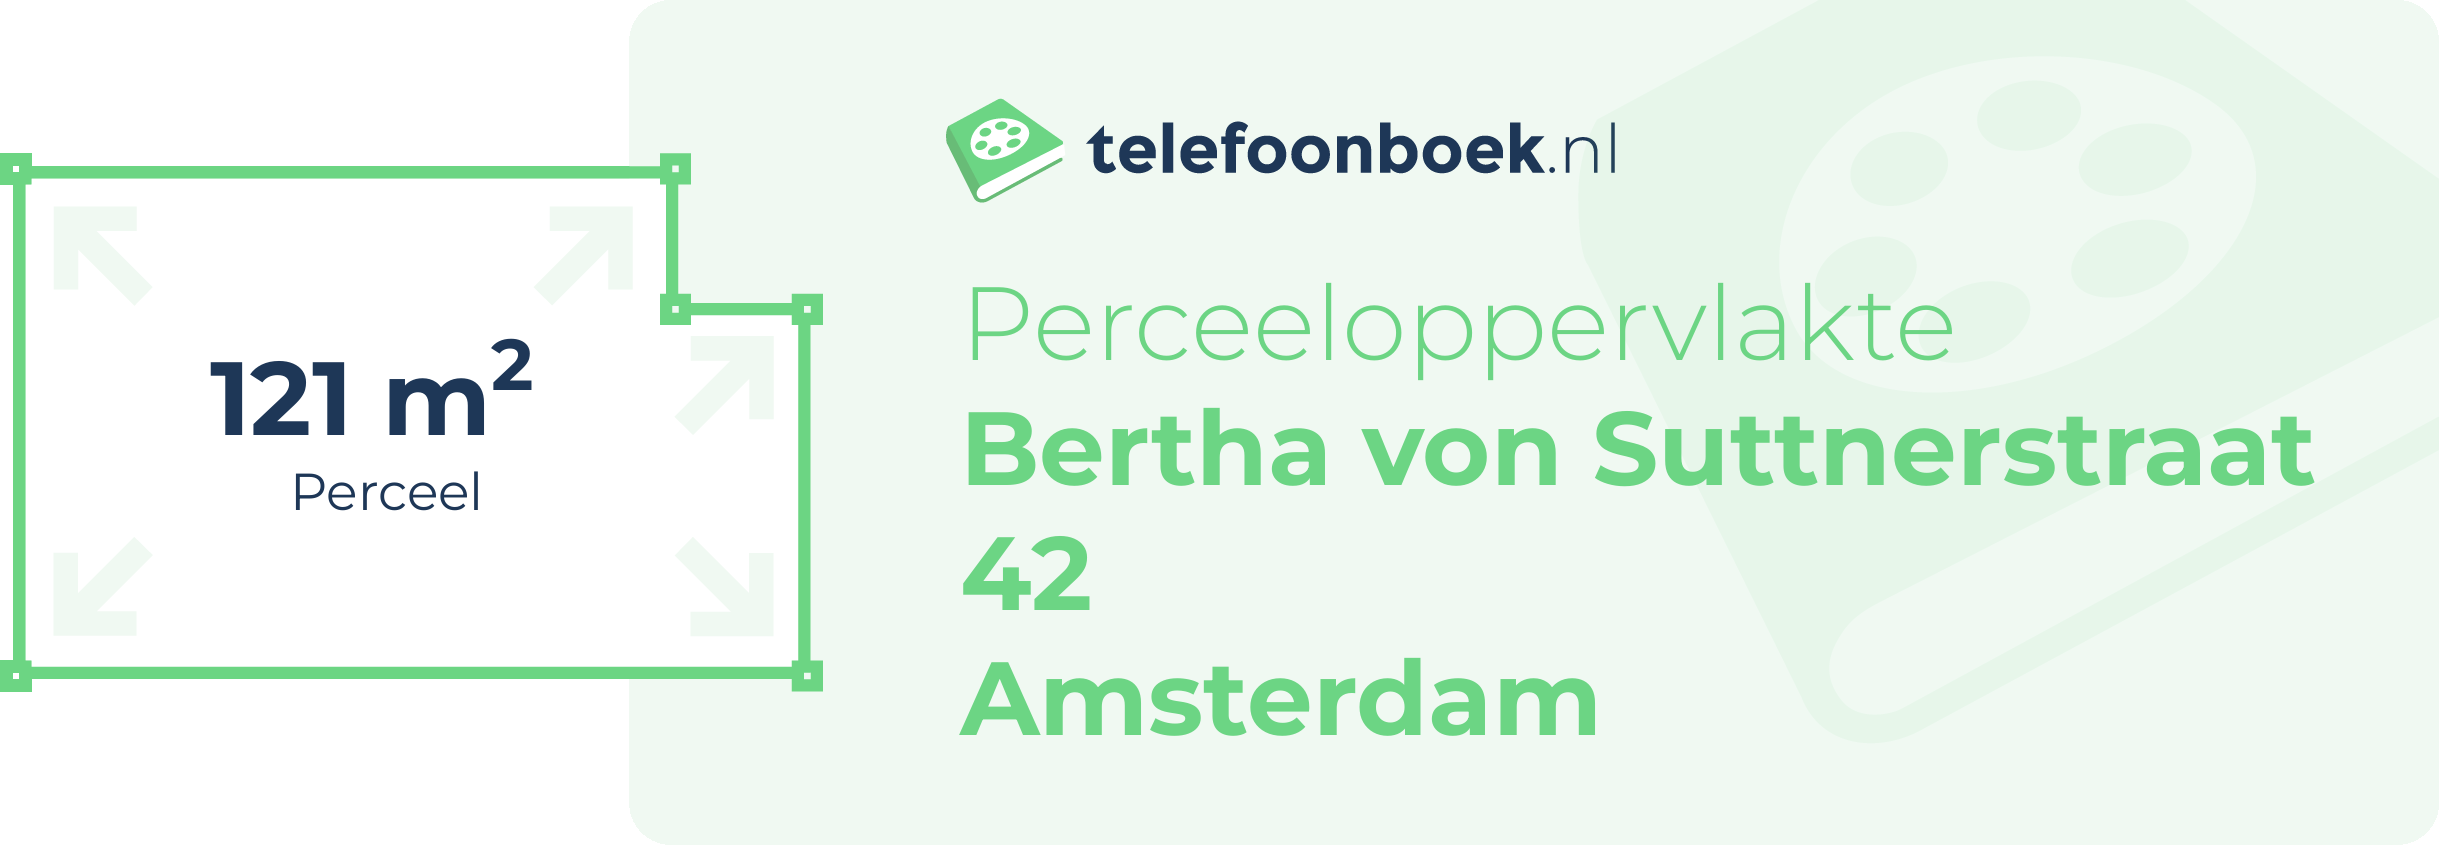 Perceeloppervlakte Bertha Von Suttnerstraat 42 Amsterdam